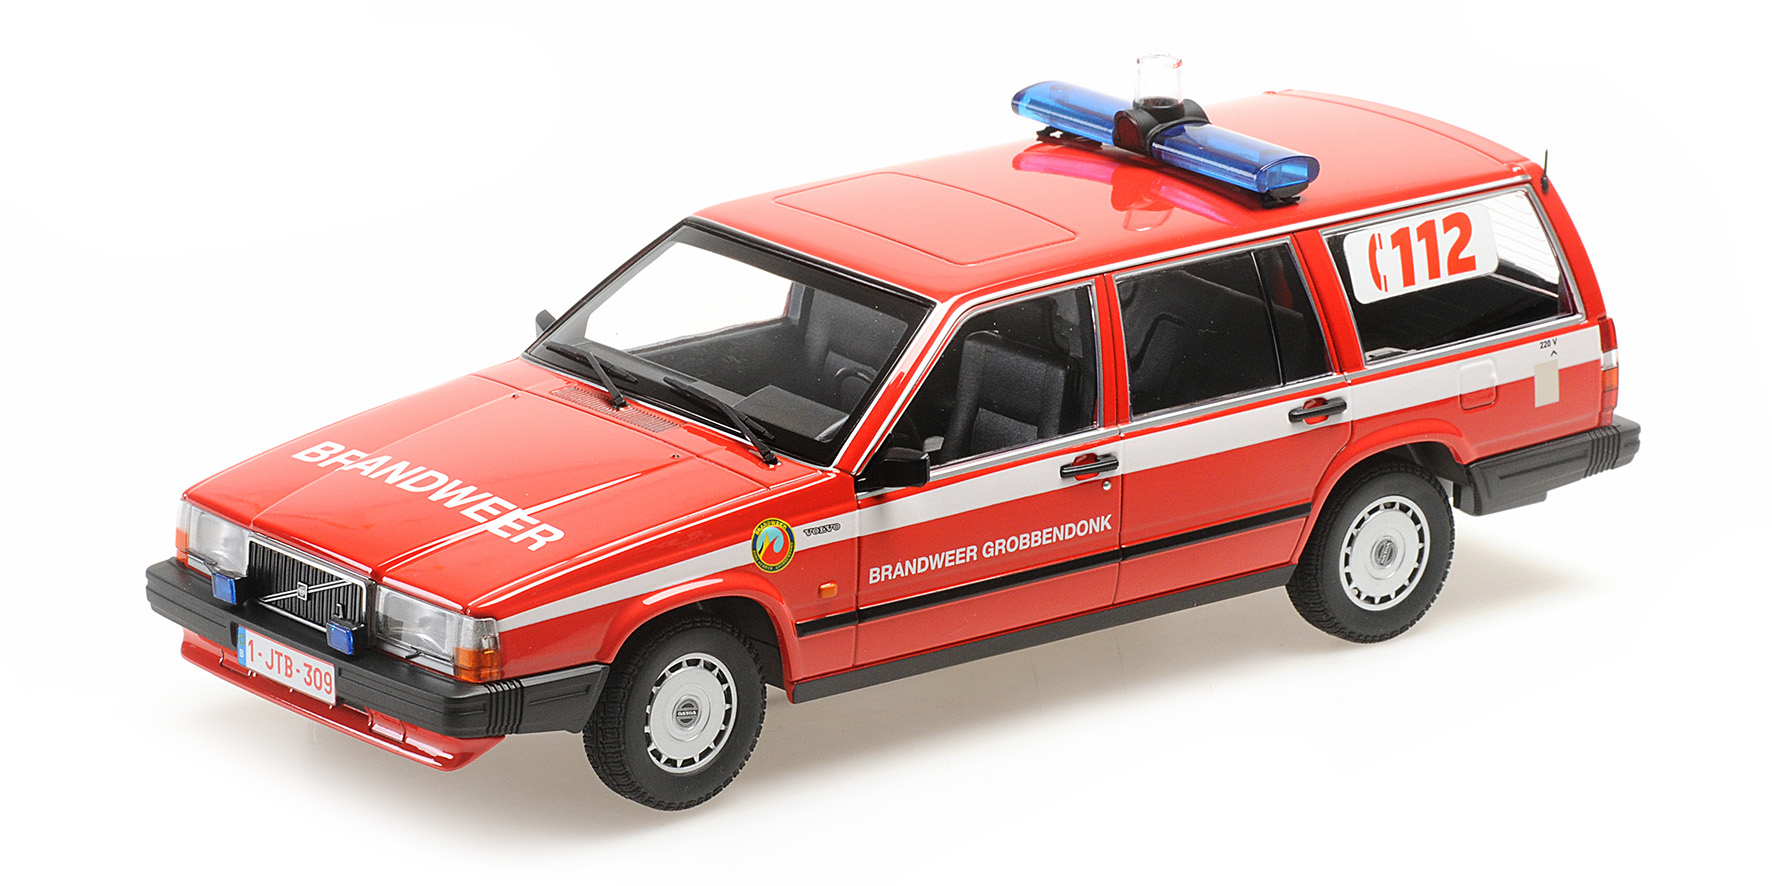 Volvo 740 GL Kombi`1986Brandw Brandweer Niederlande Grobbendonk 1:18 Die Cast